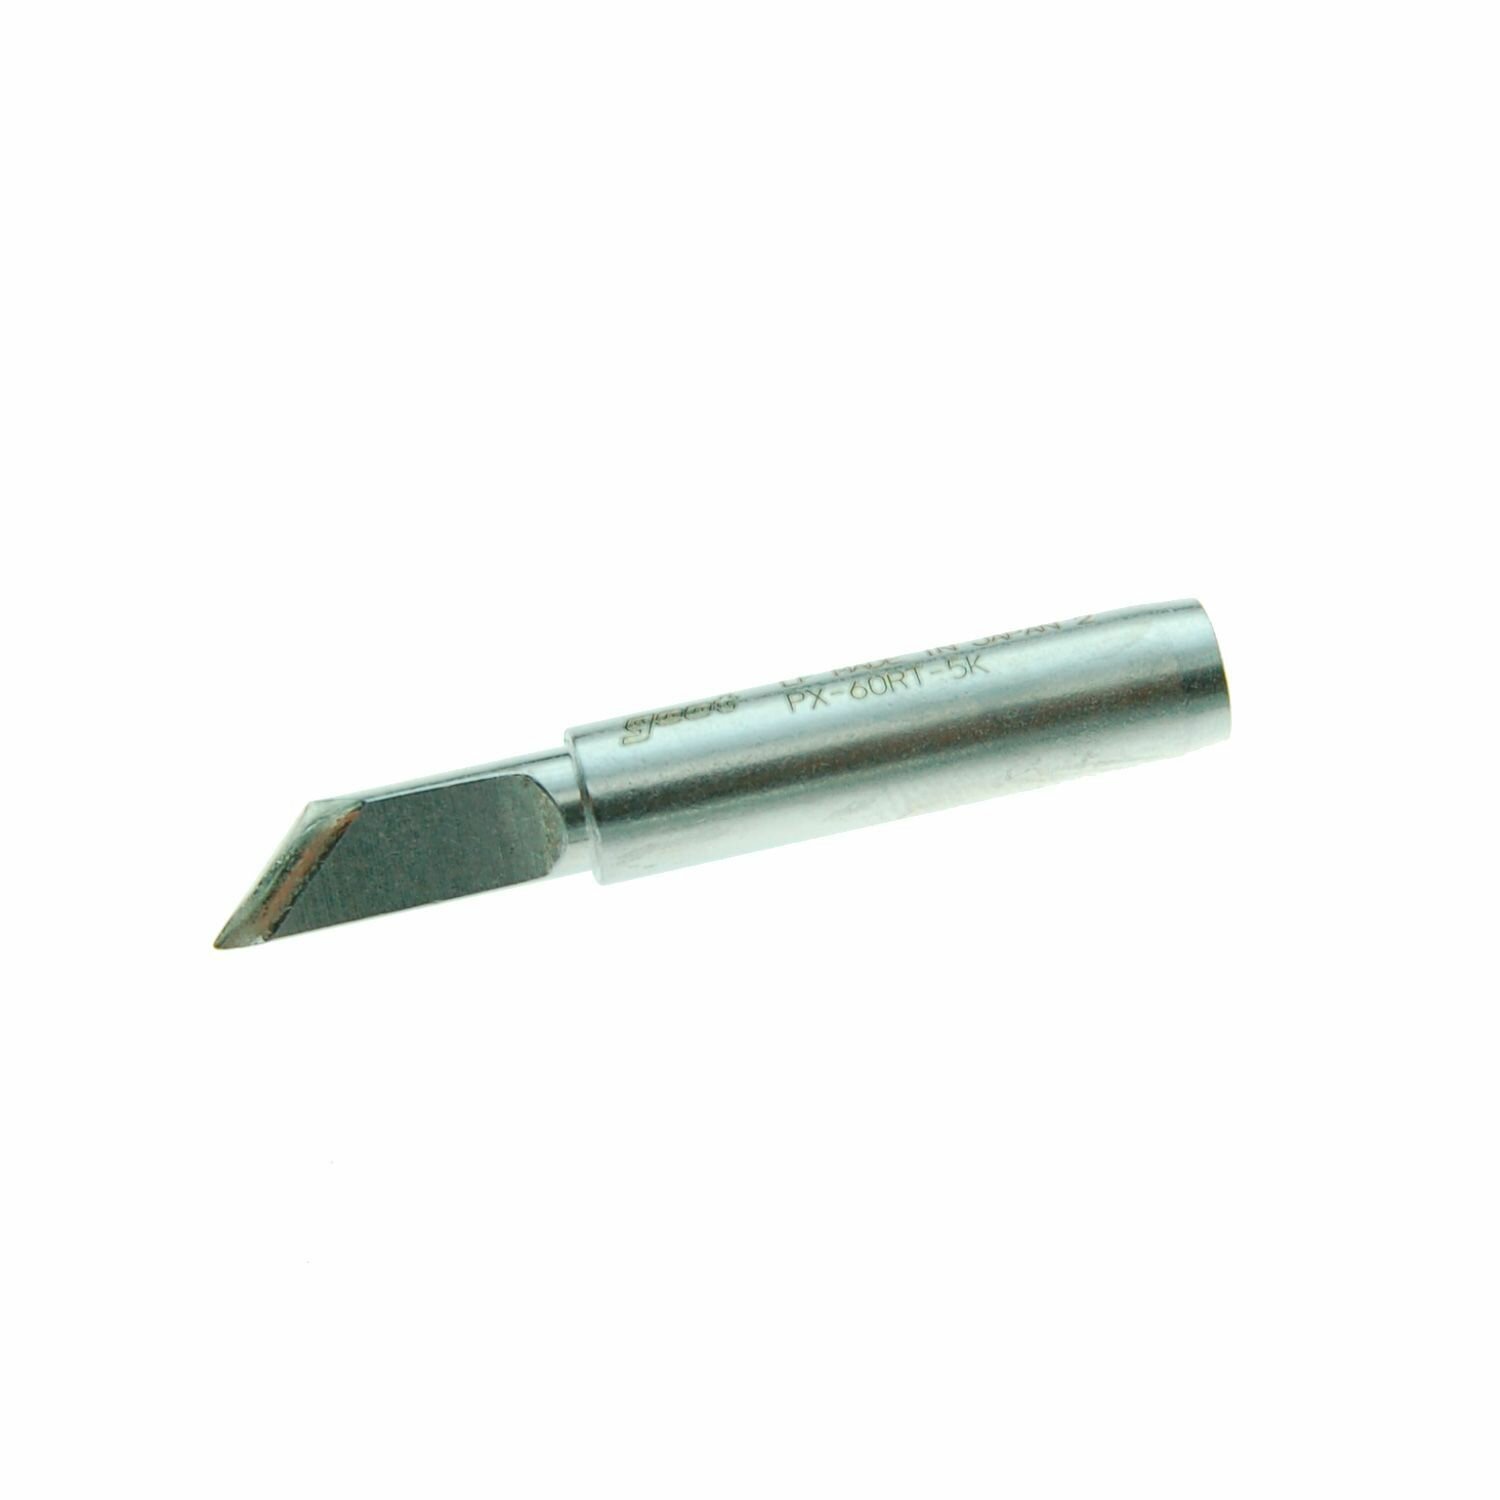 Сменное жало нож GOOT PX-60RT-5K (d6.5х26мм), насадка для паяльников с защитным покрытием, наконечник для пайки, Япония